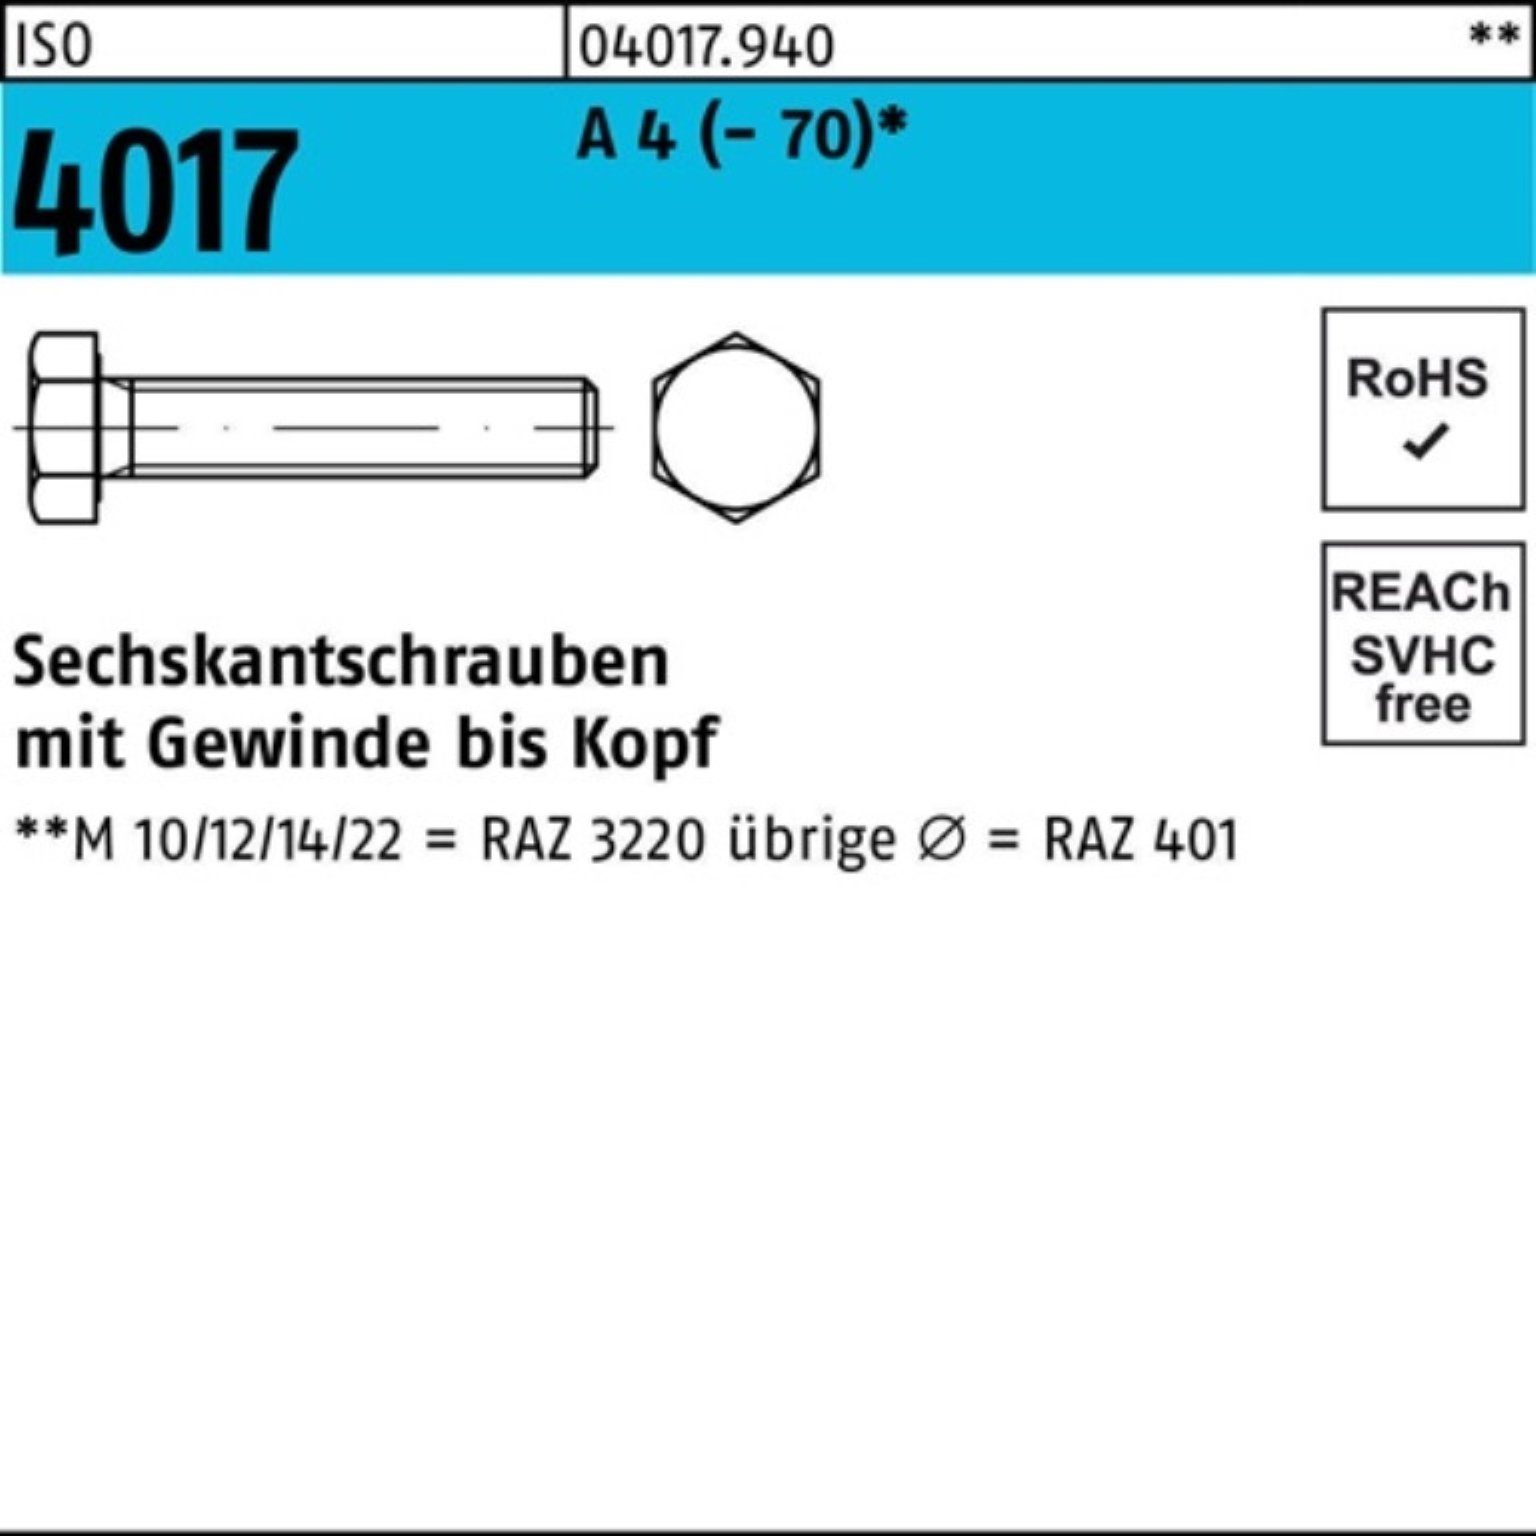 Bufab Sechskantschraube 100er Pack Sechskantschraube ISO 4017 VG M20x 80 A 4 (70) 25 Stück